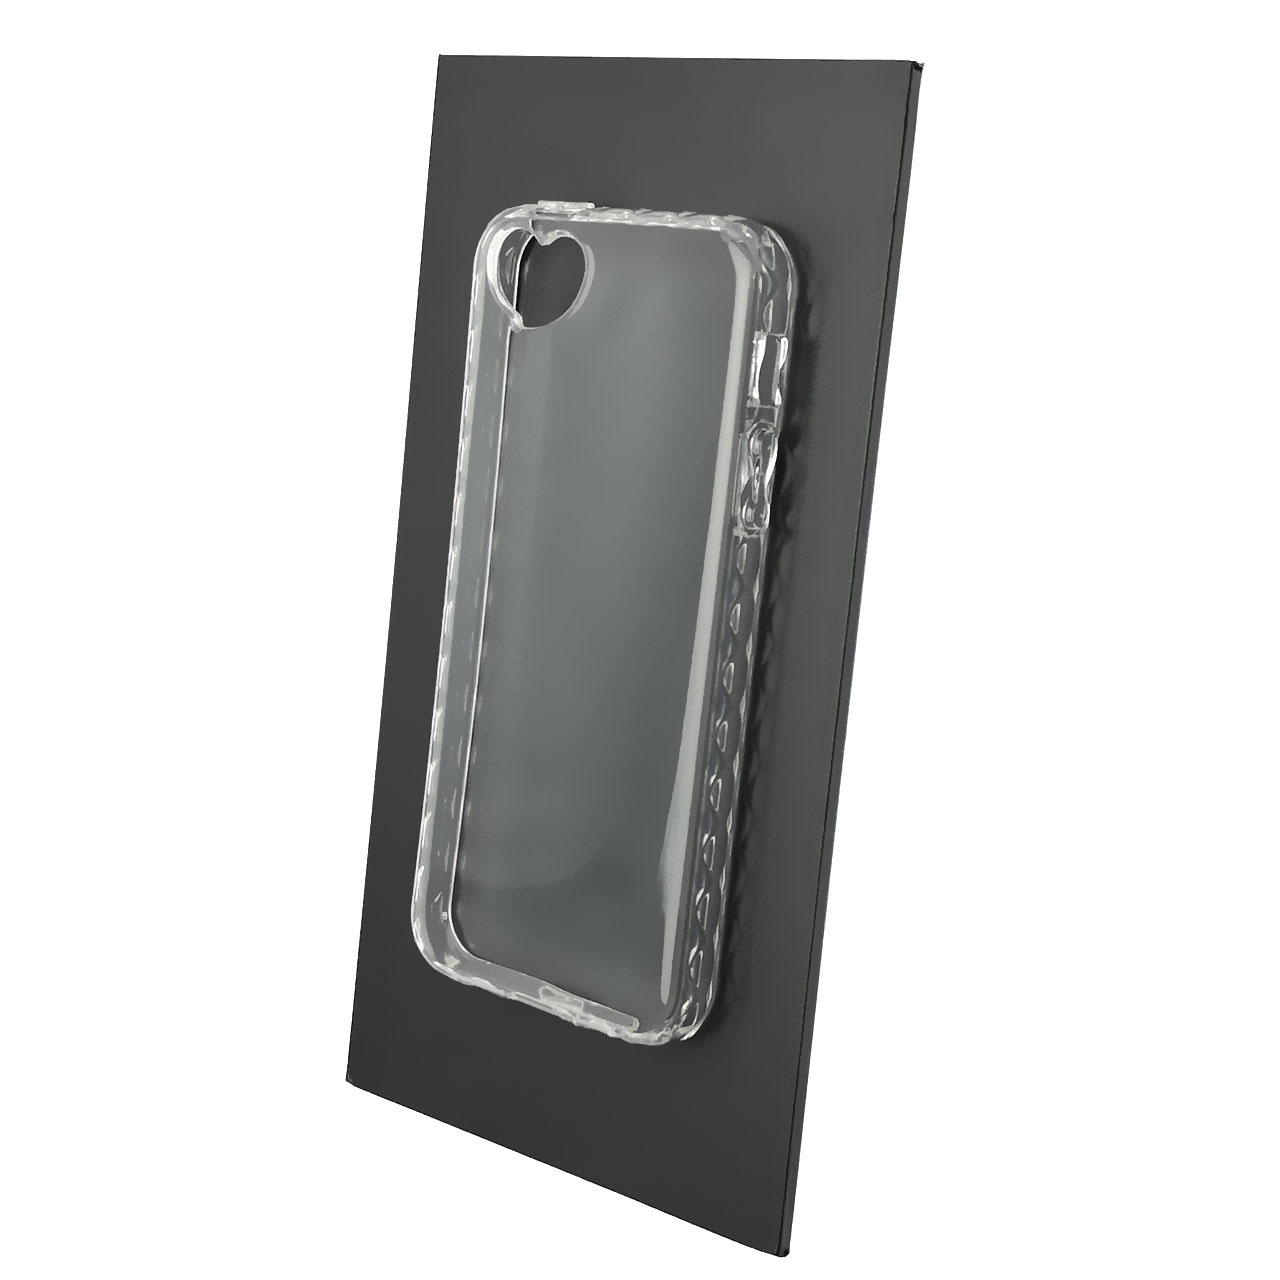 Чехол накладка для APPLE iPhone 5, iPhone 5G, iPhone 5S, iPhone SE, силикон, вырез под камеру сердечко, прозрачный